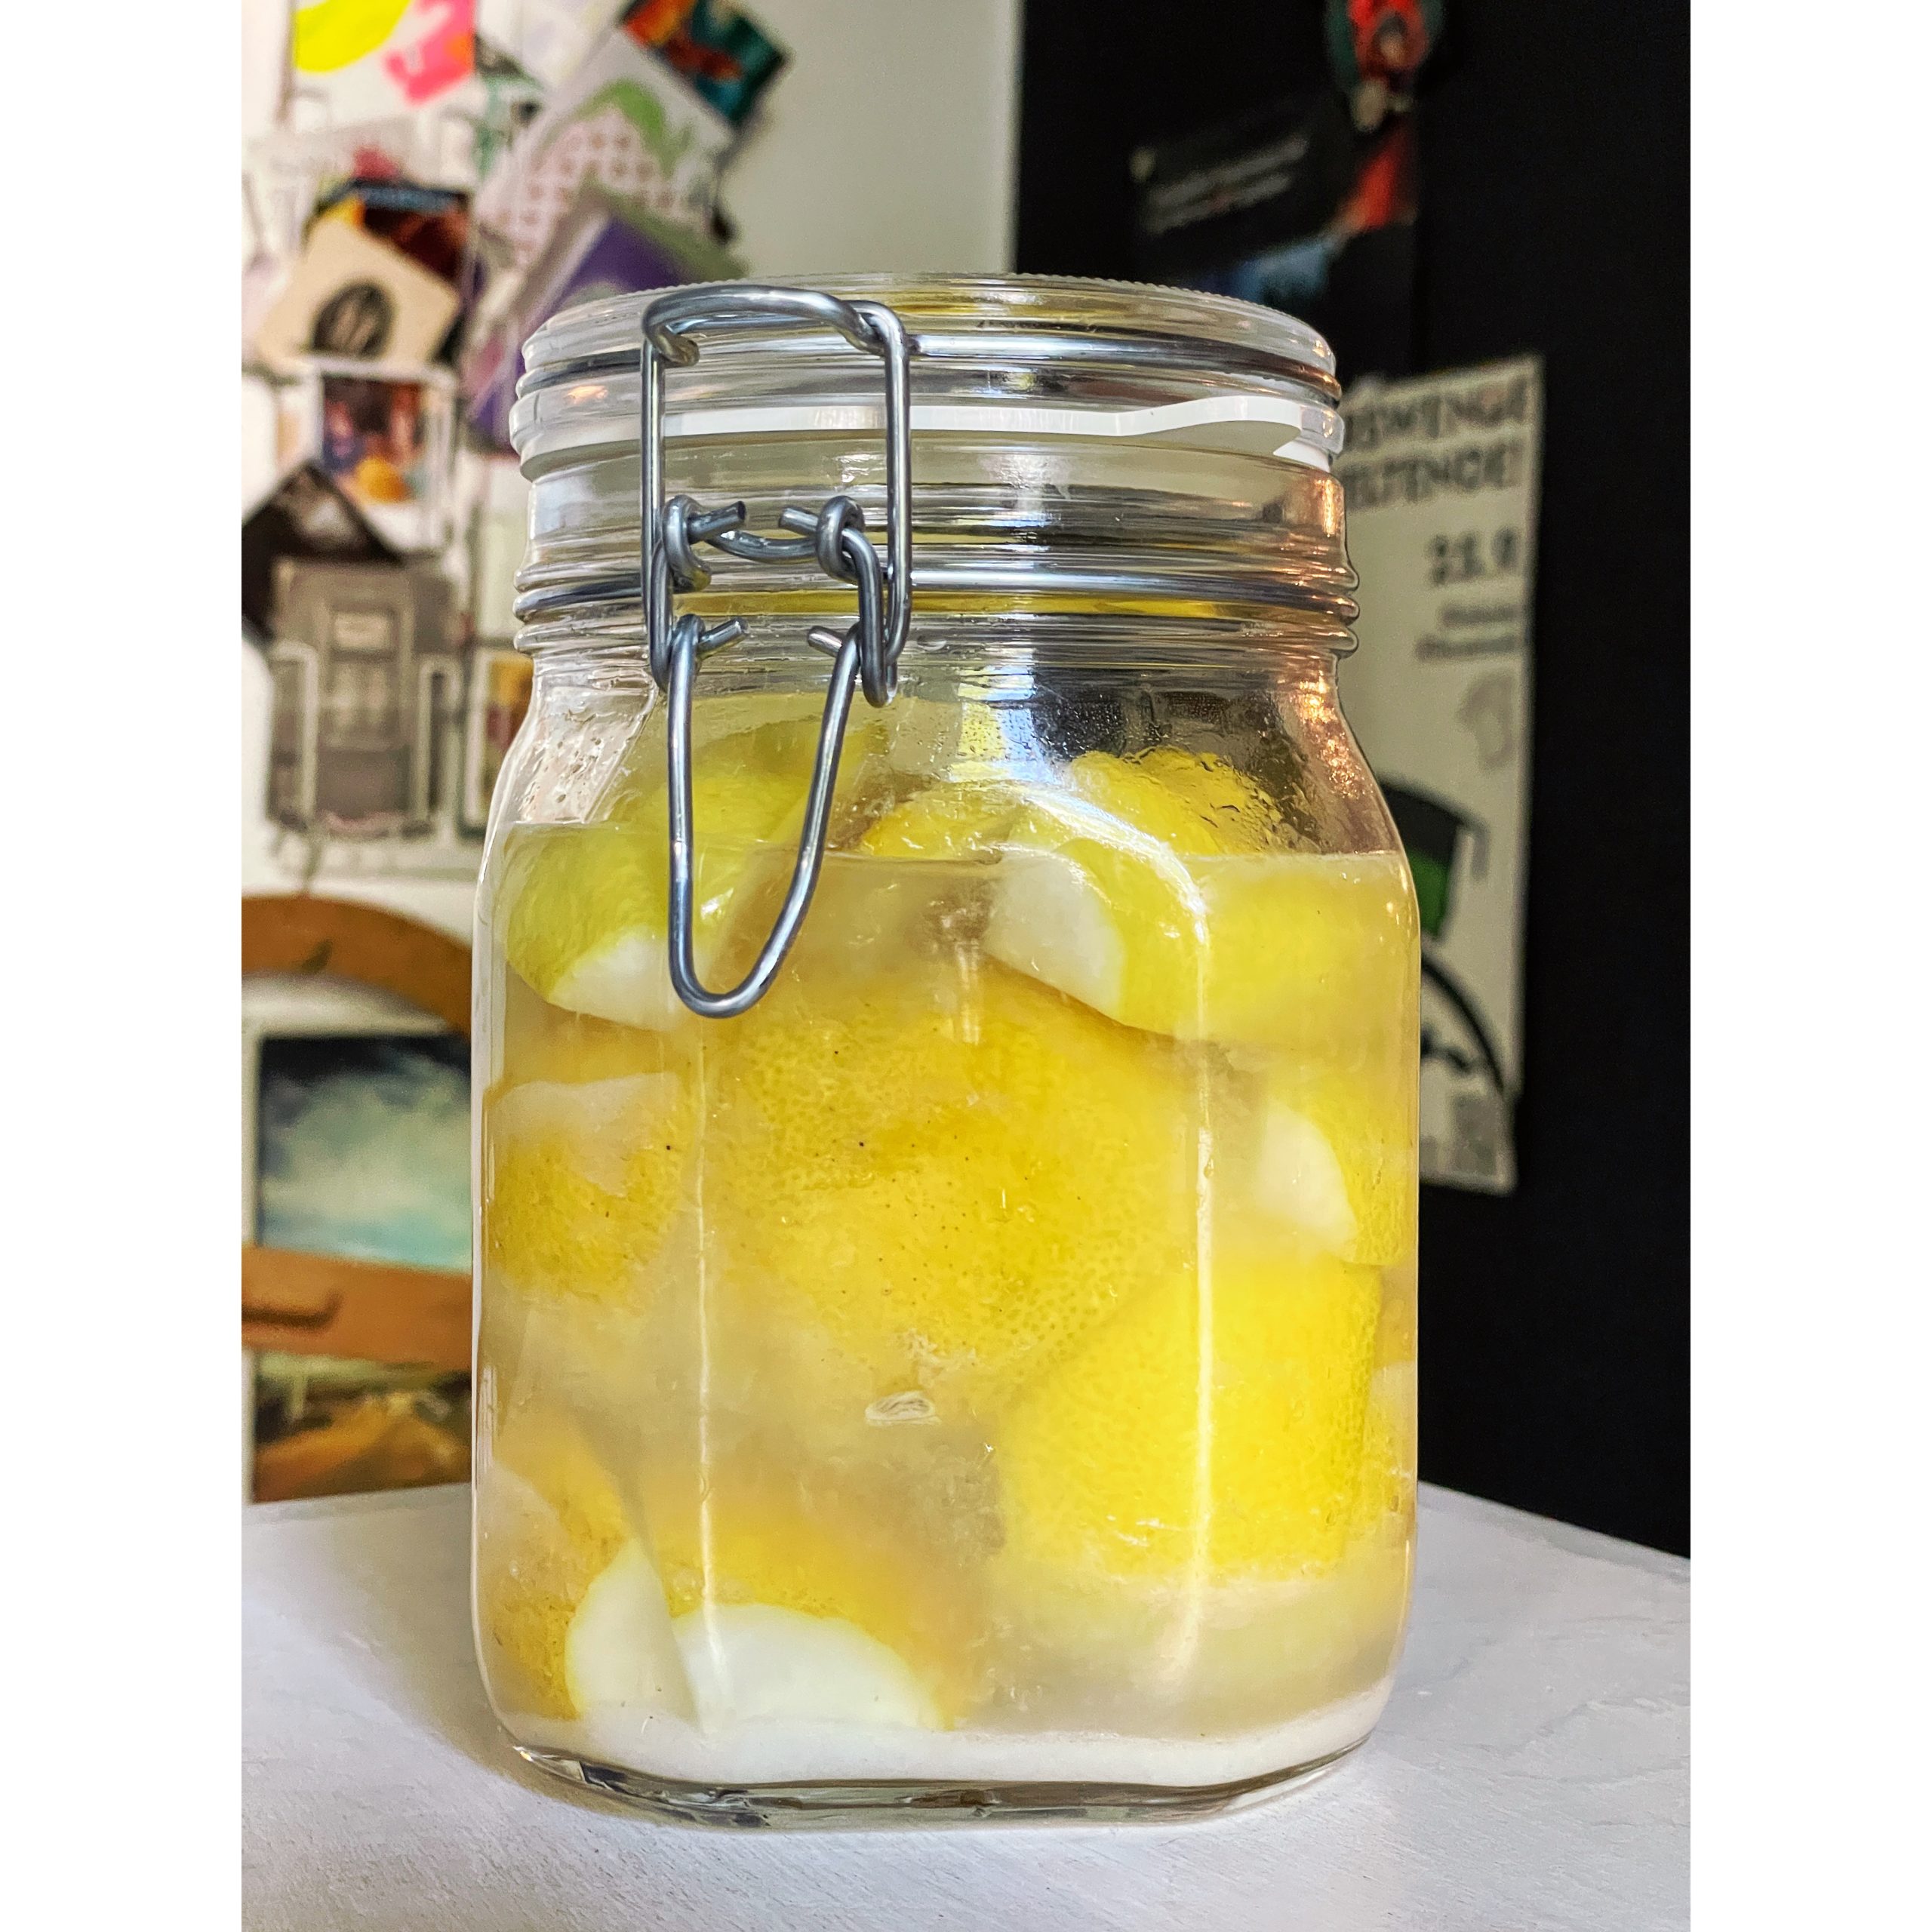 Fermented lemons